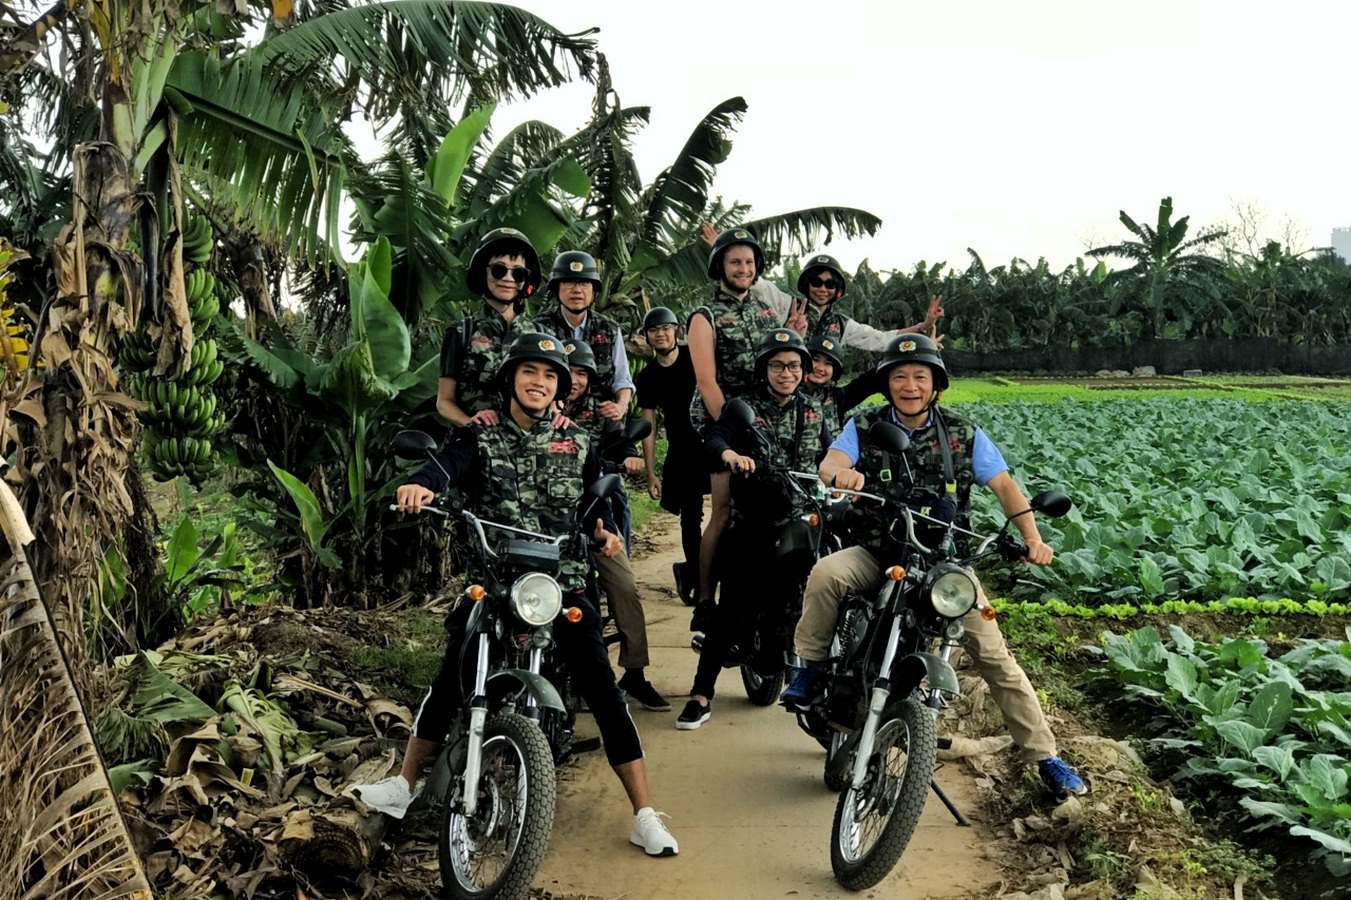 Hanoi Motorbike Tours, Hanoi Motorcycle Tours, Hanoi Backstreet Tours, Hanoi Motorcycle Tours, Hanoi Vespa Tours